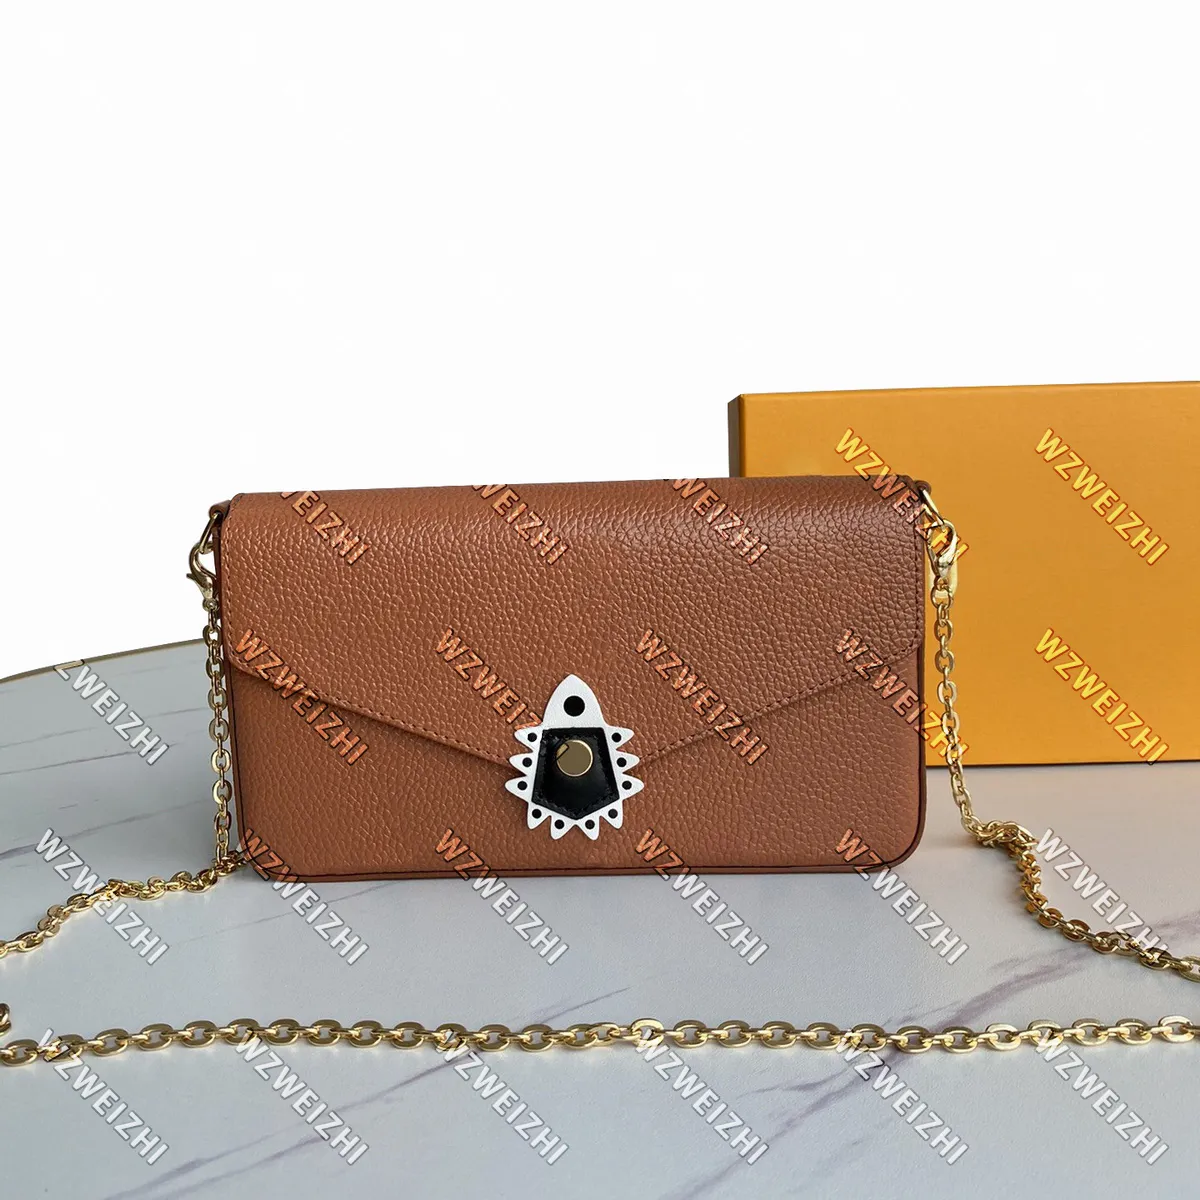 Высокое качество сумки натуральная кожаная сумка женщин плечо крест сумка сумка мессенджер кошелек сумки коричневый цветок леди кошелек с коробкой черный белый коричневый